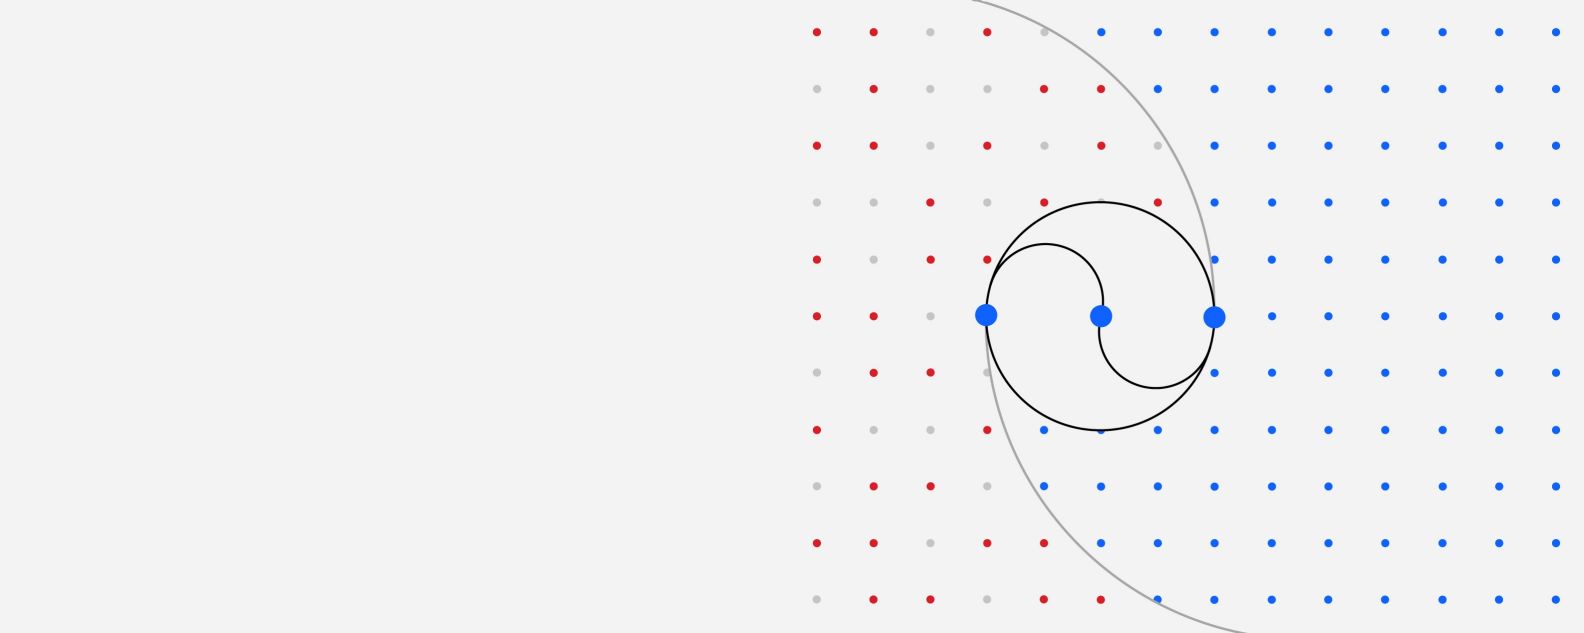 세 개의 큰 점이 다양한 곡선으로 연결되어 있는 컬러 점의 격자 일러스트